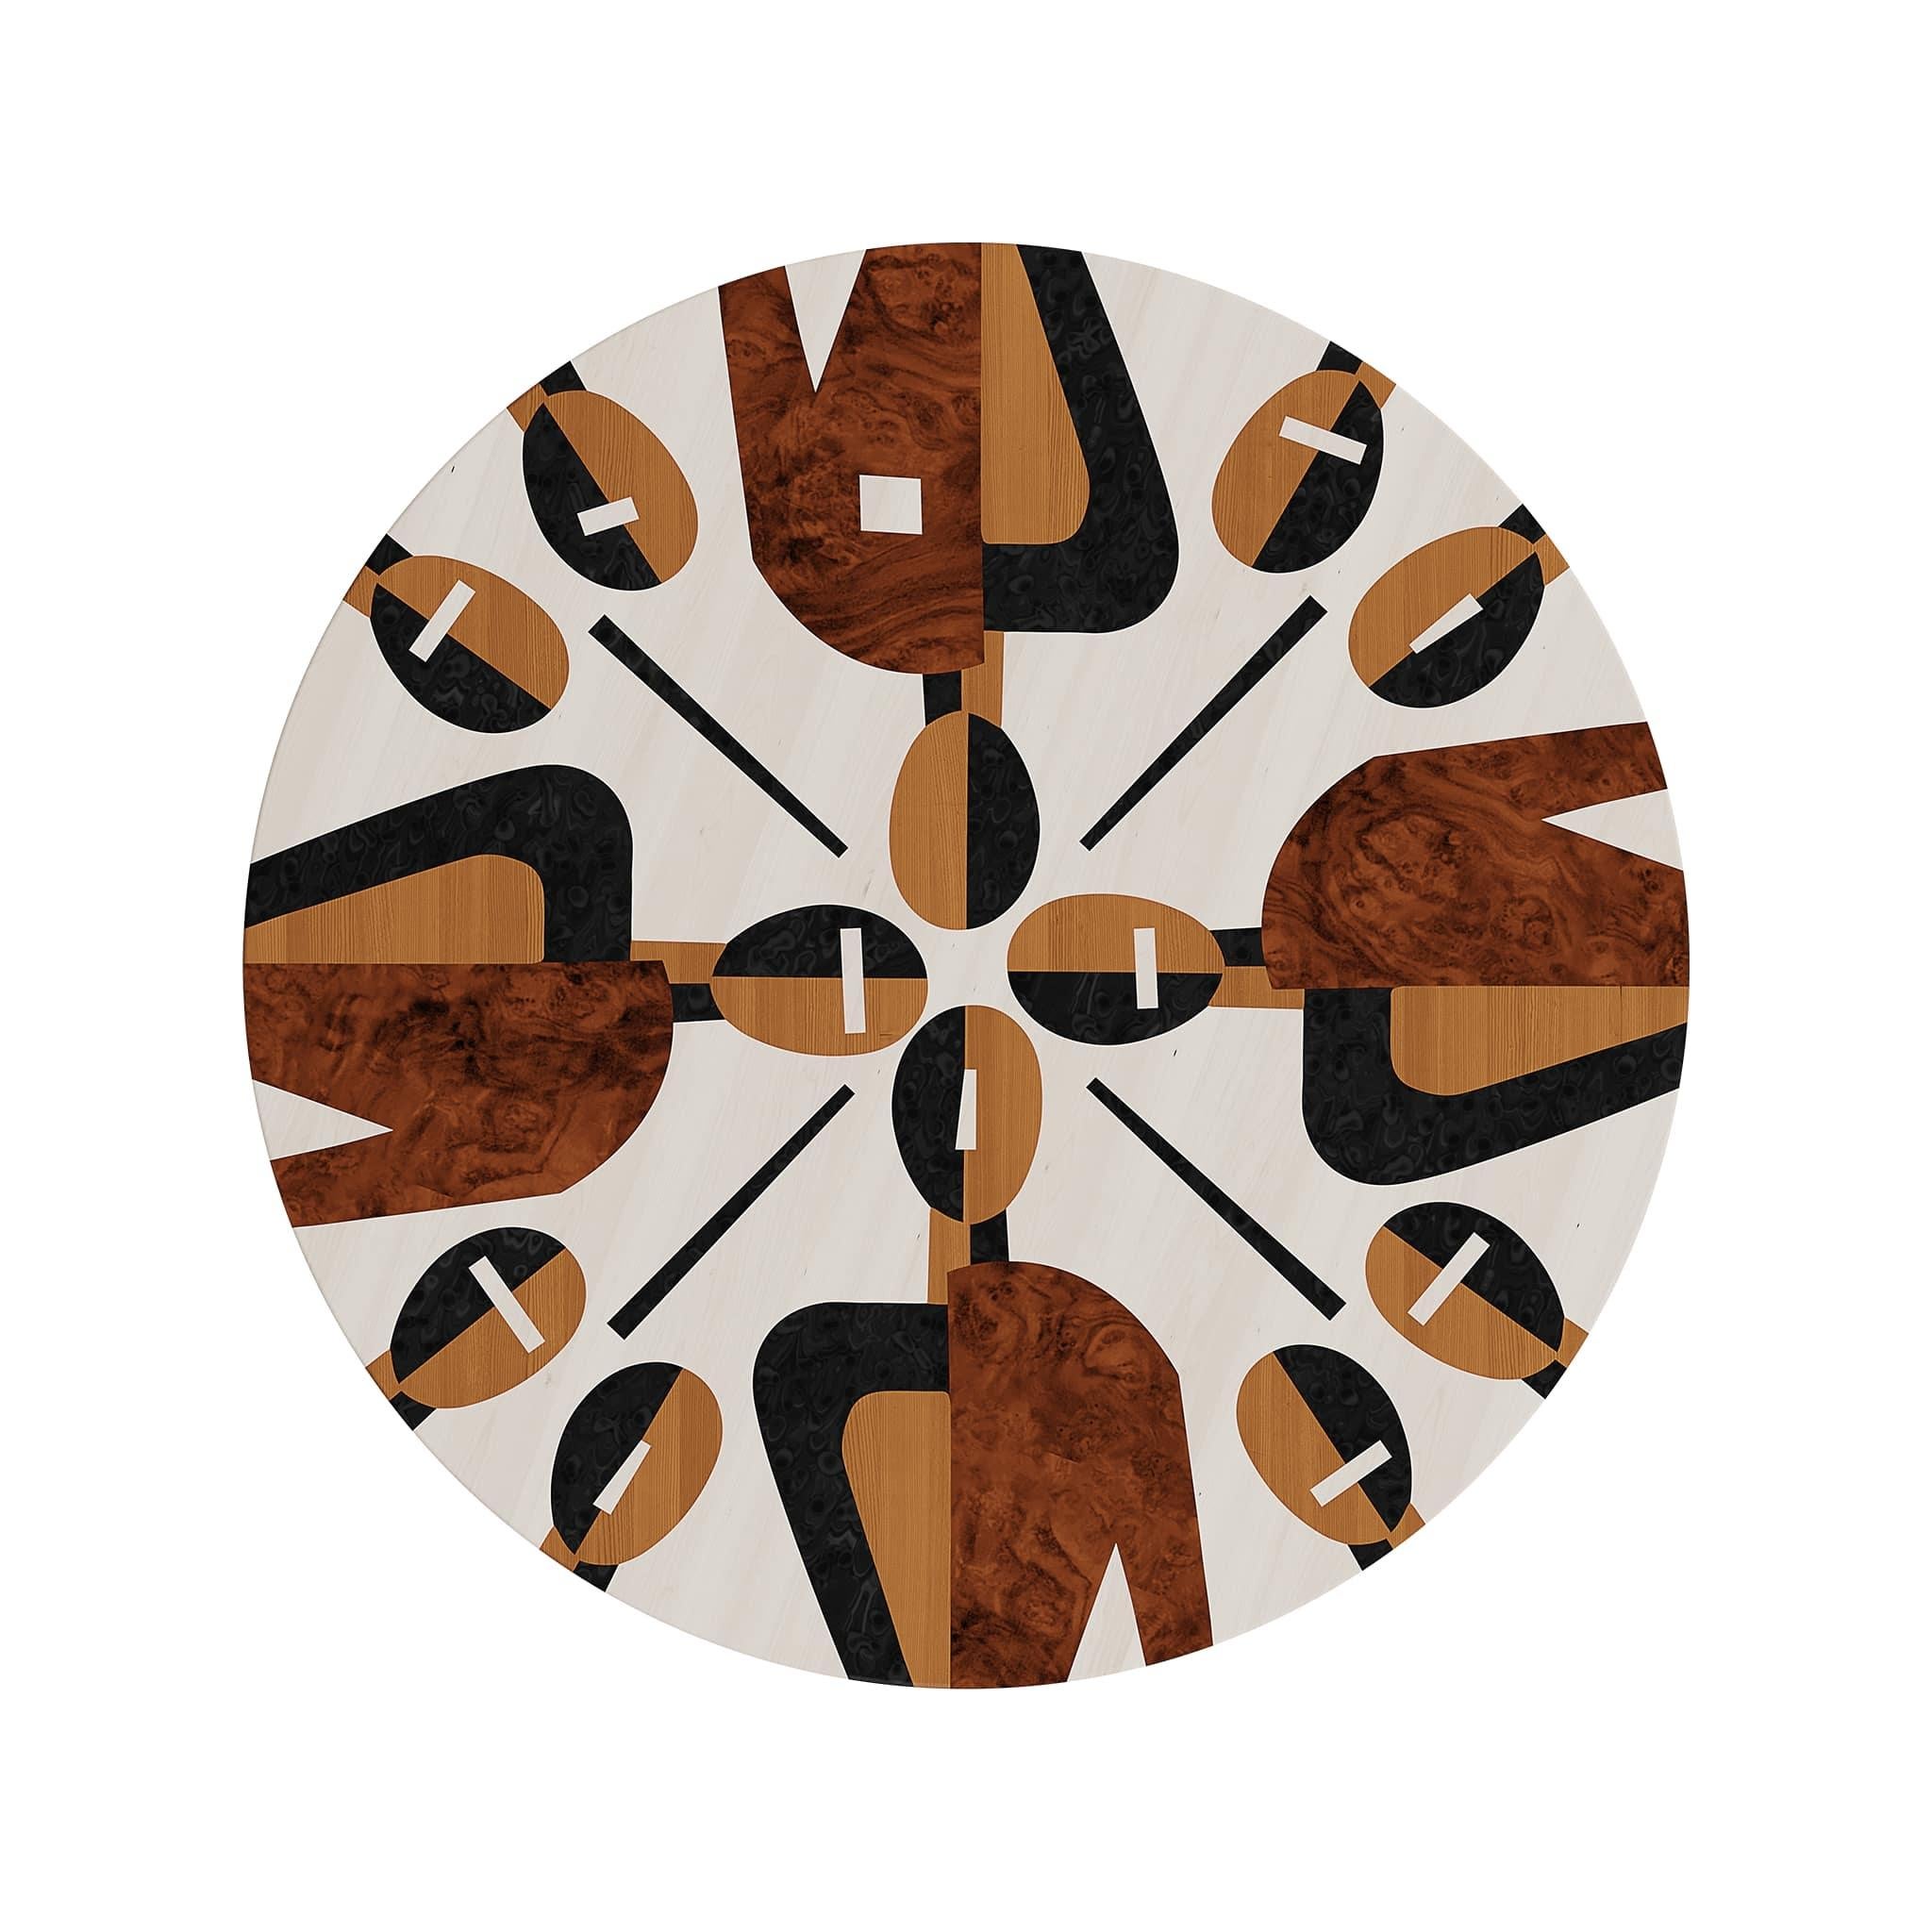 Zeitgenössischer Mid-Century Moder runder Beistelltisch Holzeinlegearbeiten
Der Beistelltisch Ludwika ist ein modernes Stück für zeitgenössische Einrichtungsprojekte. Dieser Beistelltisch ist eine attraktive Ergänzung für ein modernes Wohnzimmer, in